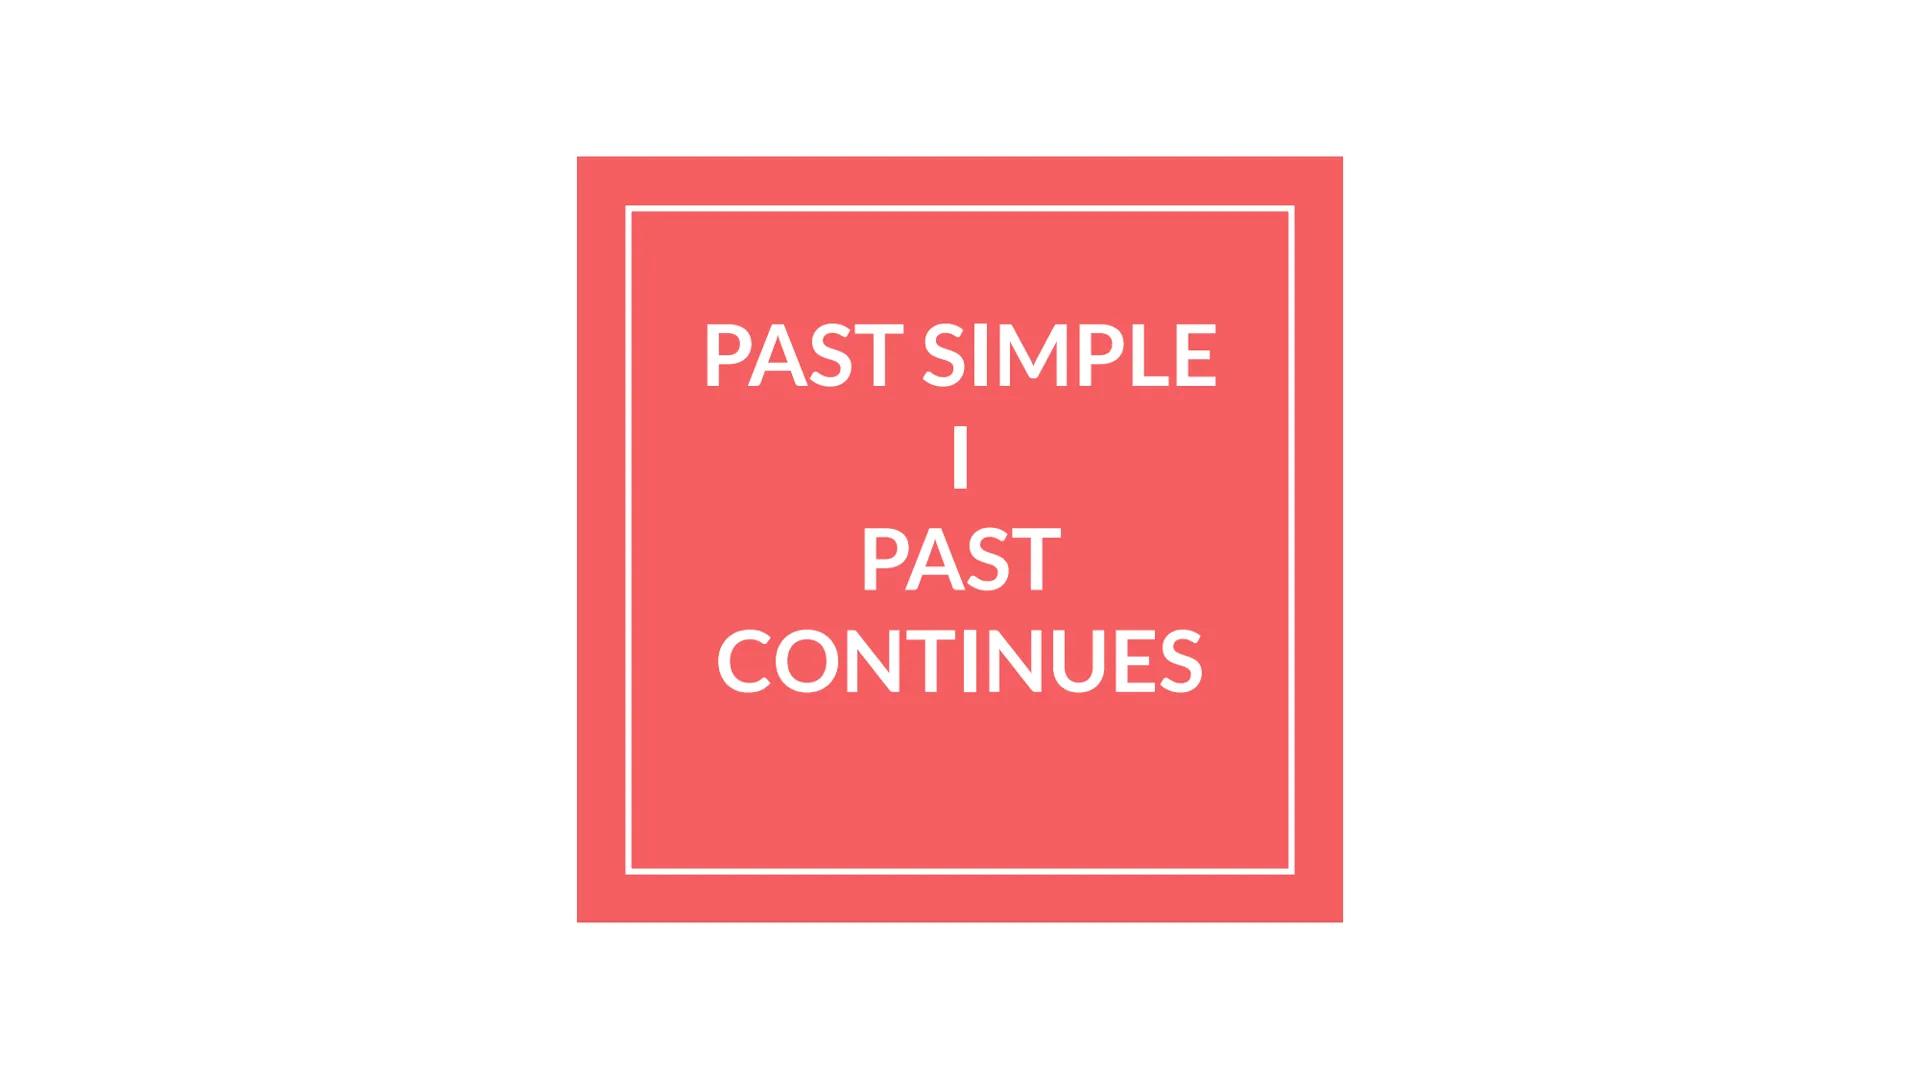 PAST SIMPLE
I
PAST
CONTINUES PAST SIMPLE
Jest czasem przeszłym dokonanym. Opisuje wydarzenia, które dokonały się w określonym czasie w
przes